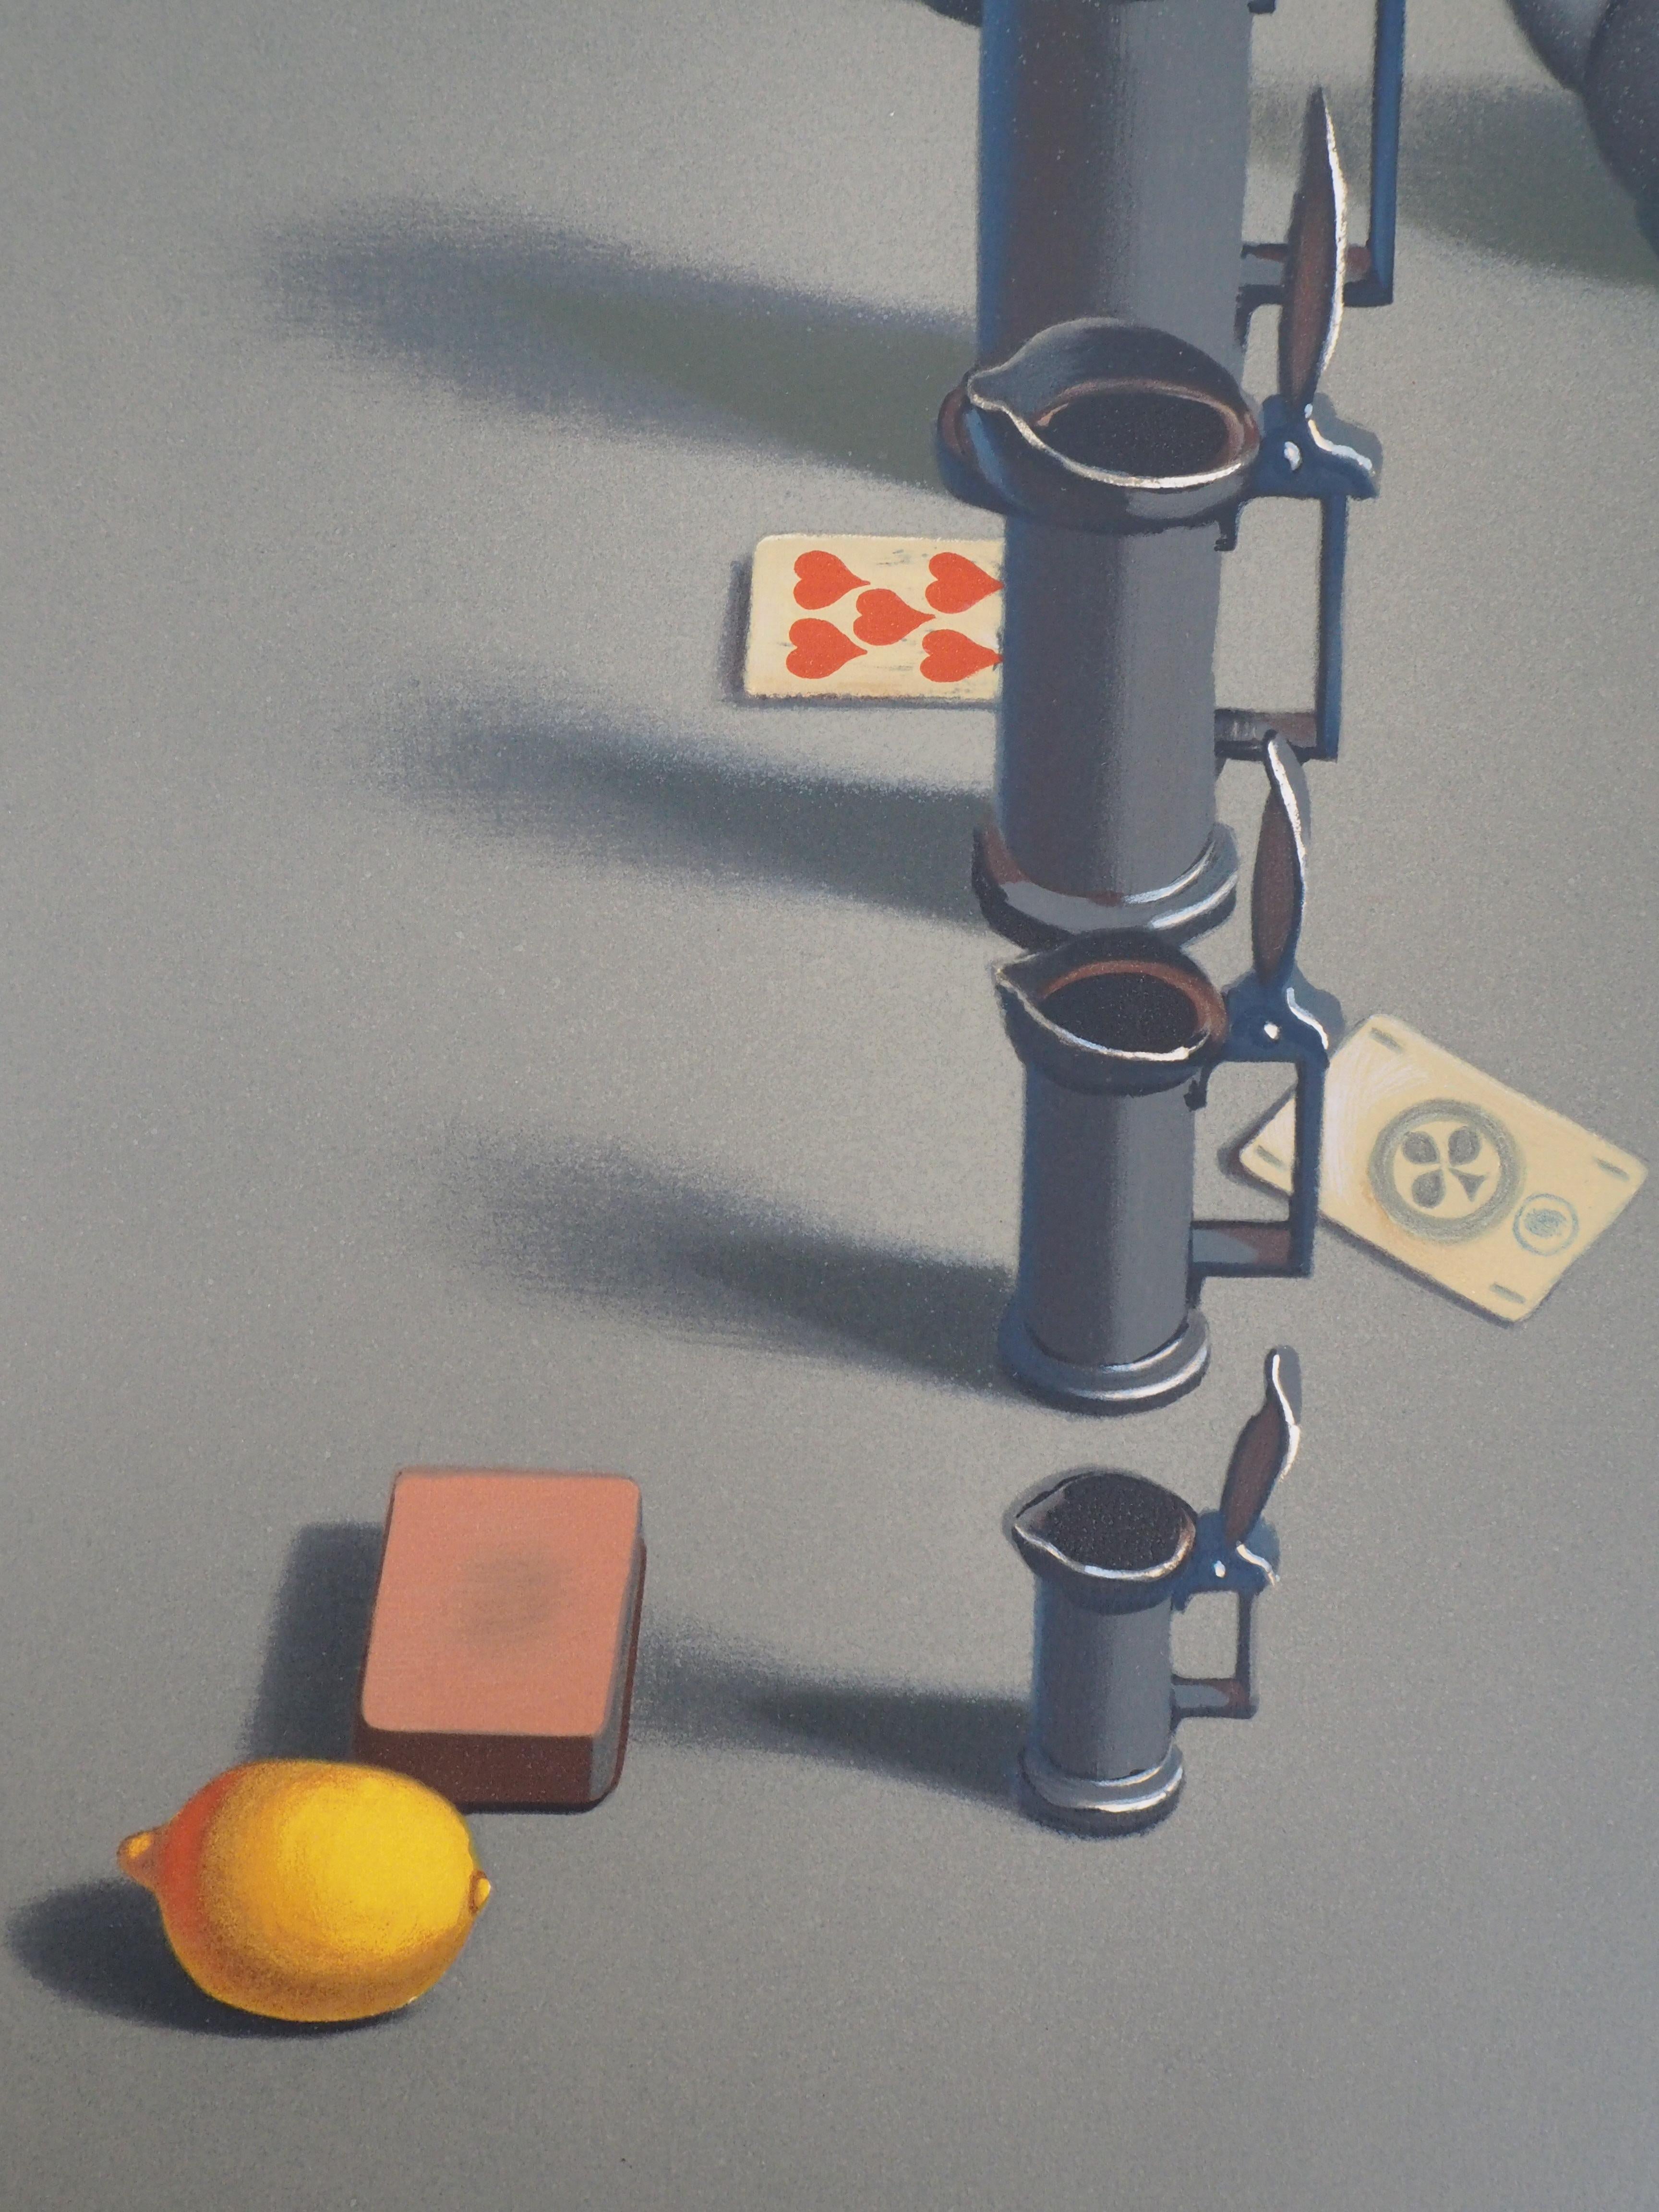 Georges ROHNER
Nature morte surréaliste avec citron, 1972

Lithographie originale (atelier Mourlot)
Signé à la main au crayon
Justified HC (hors commerce)
Sur papier Japon 76 x 54 cm (c. 29,9 x 21,2 inch)

Très bon état.